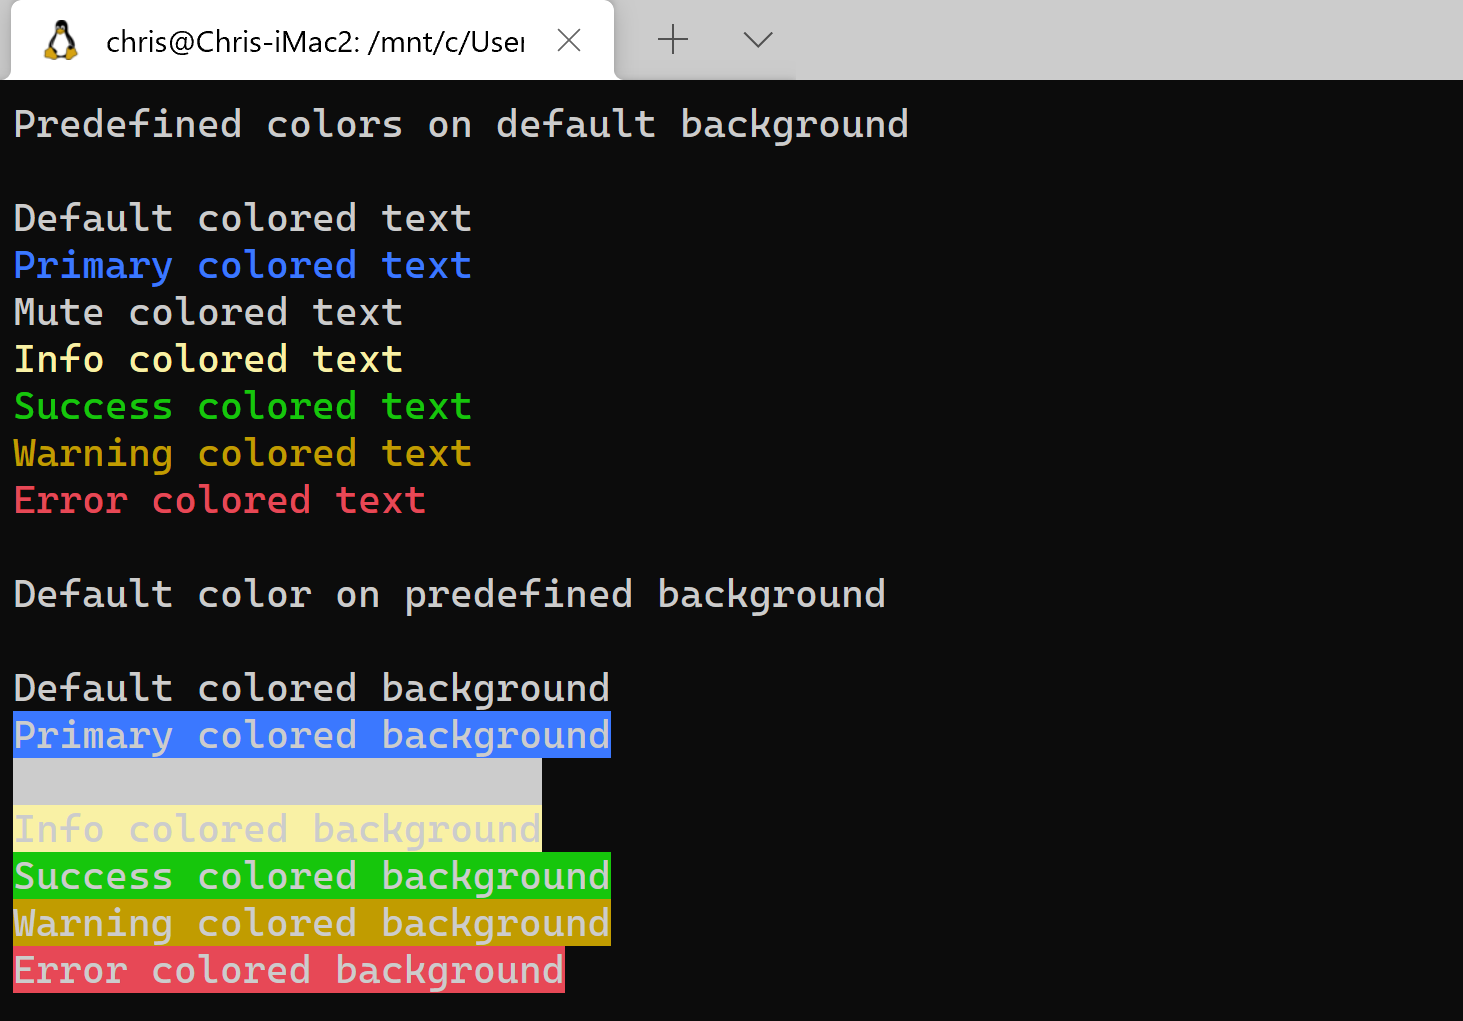 Thay đổi màu văn bản trong terminal Linux để tạo ra một giao diện hoàn toàn mới cho hệ thống của bạn. Điều này sẽ giúp bạn dễ dàng phân biệt các dòng lệnh khác nhau. Hãy xem hình ảnh liên quan để biết cách làm nhanh chóng.